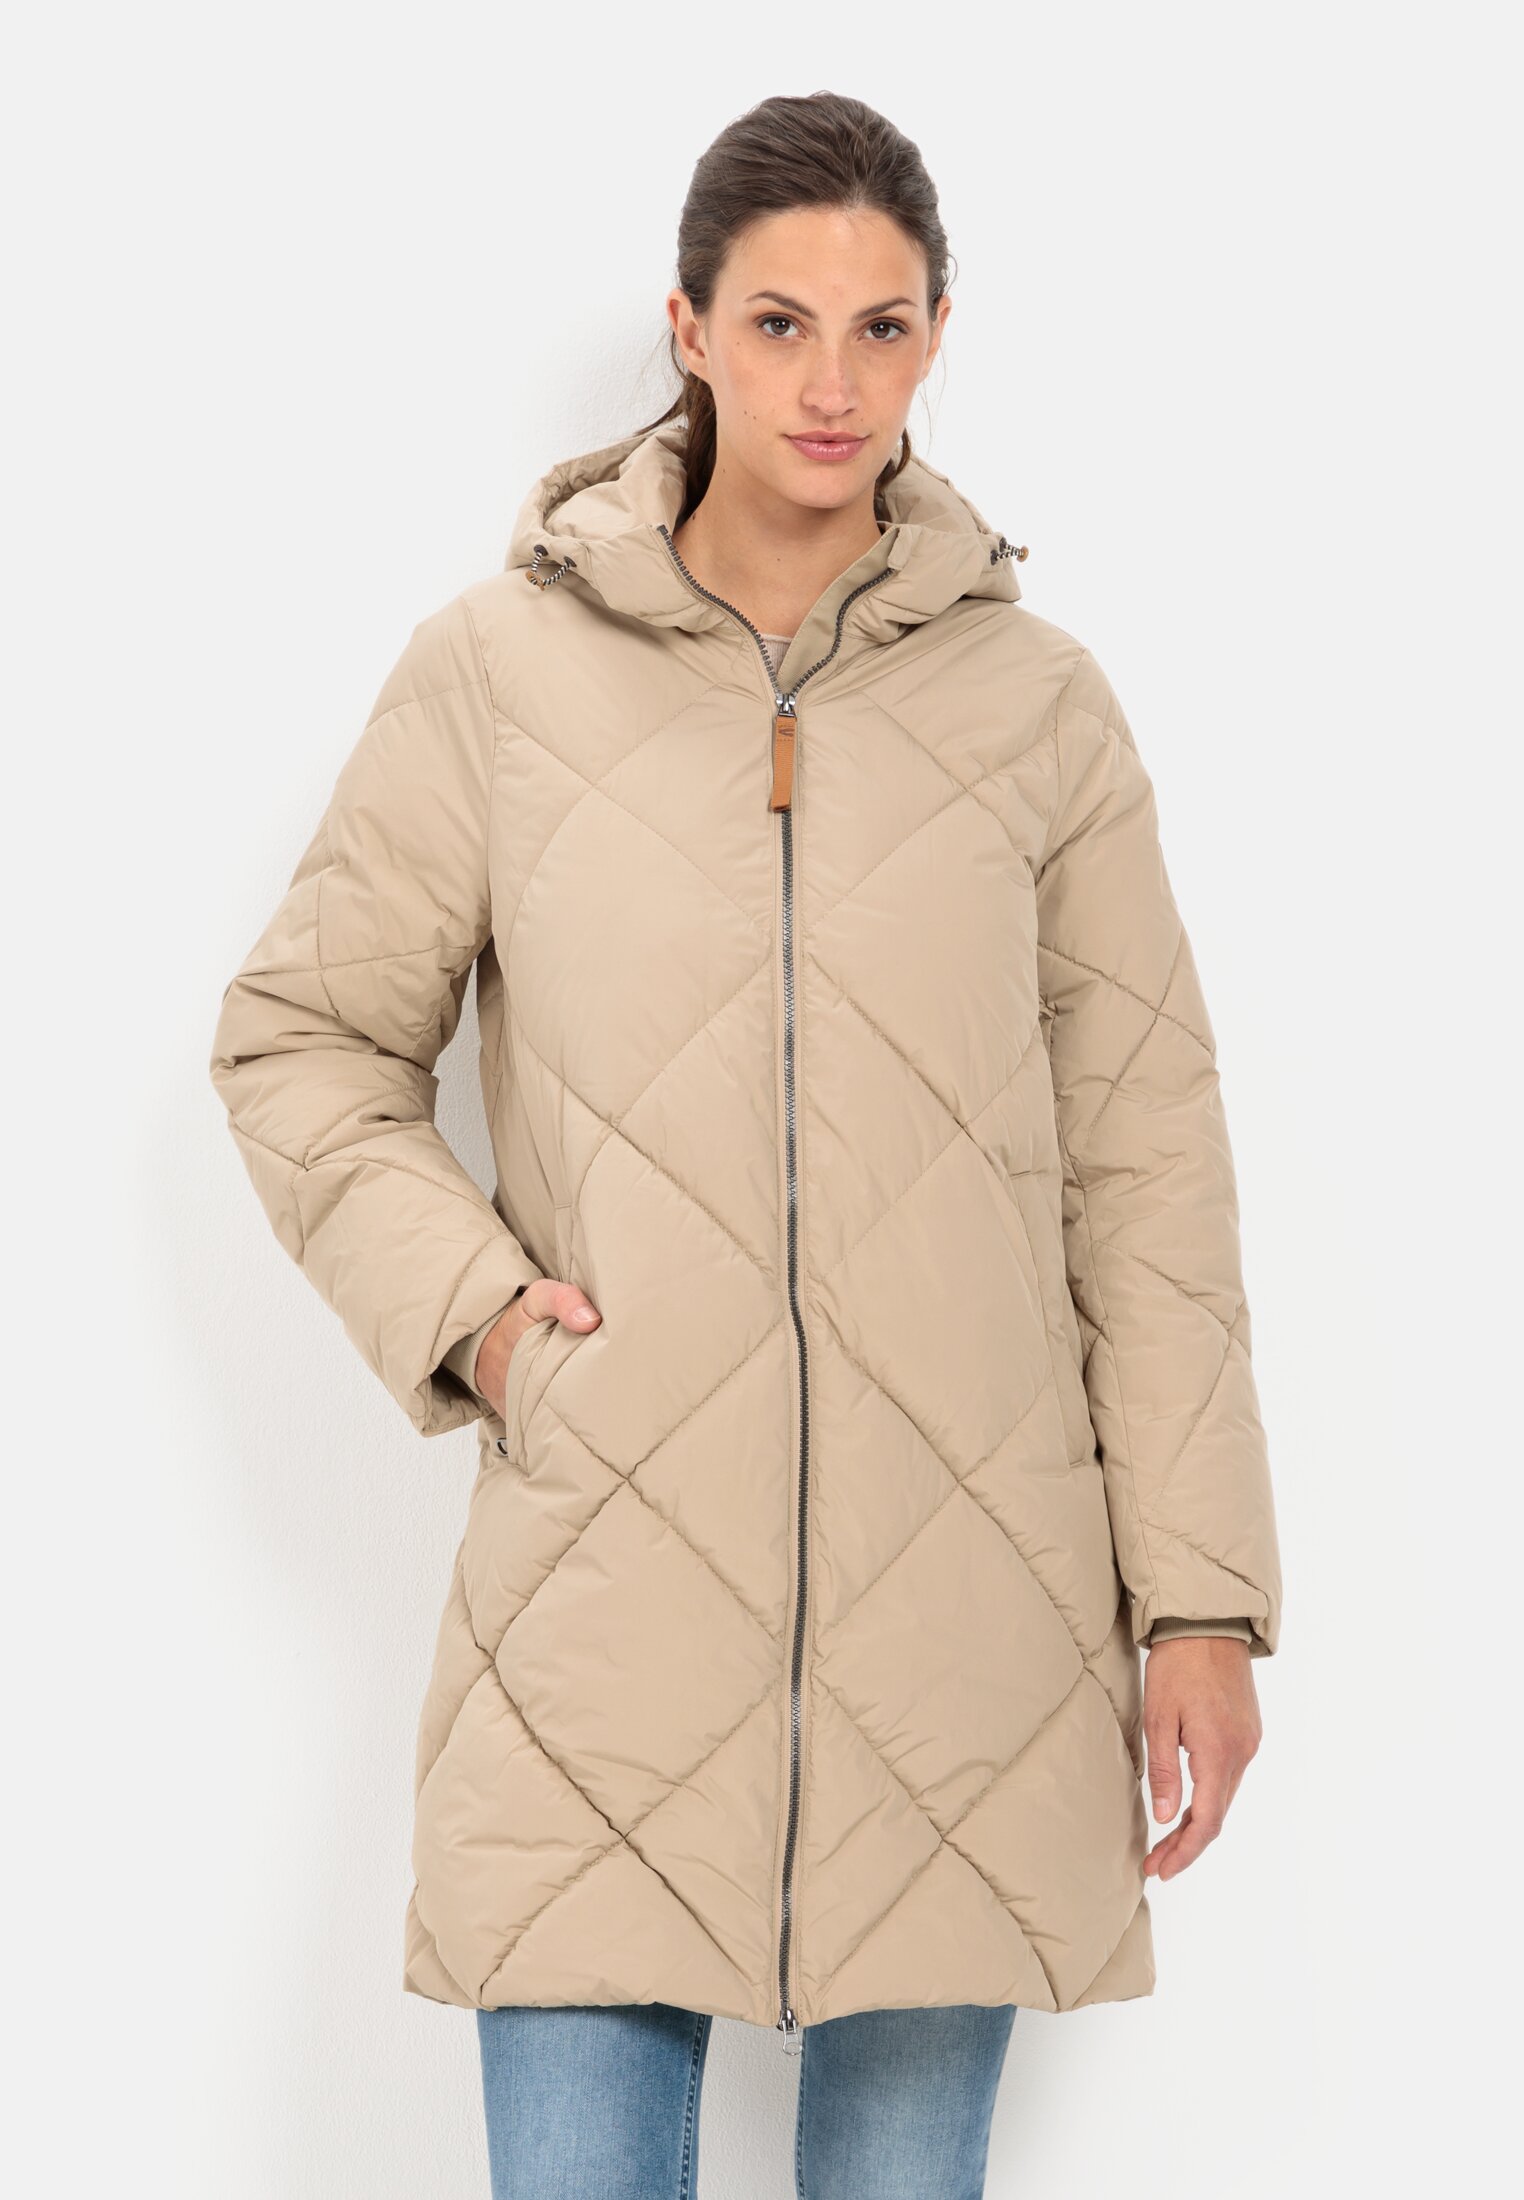 Women\'s winter jackets online | camel active